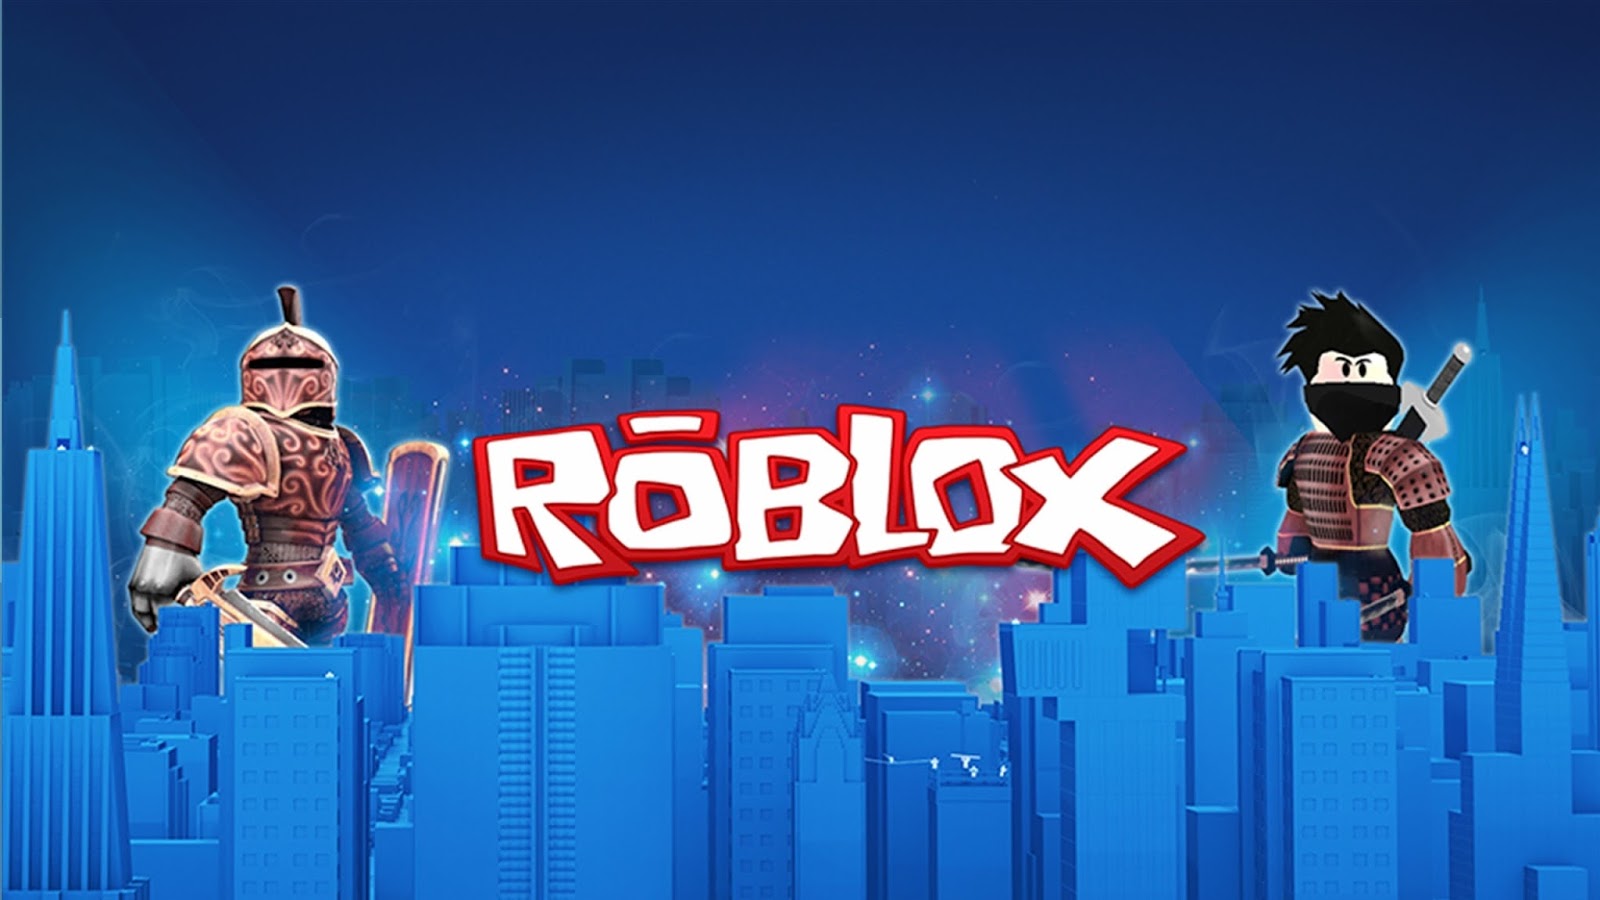 New Original Hack Roblox Admin Script Hack Tool 2016 Android Ios - free roblox admin script